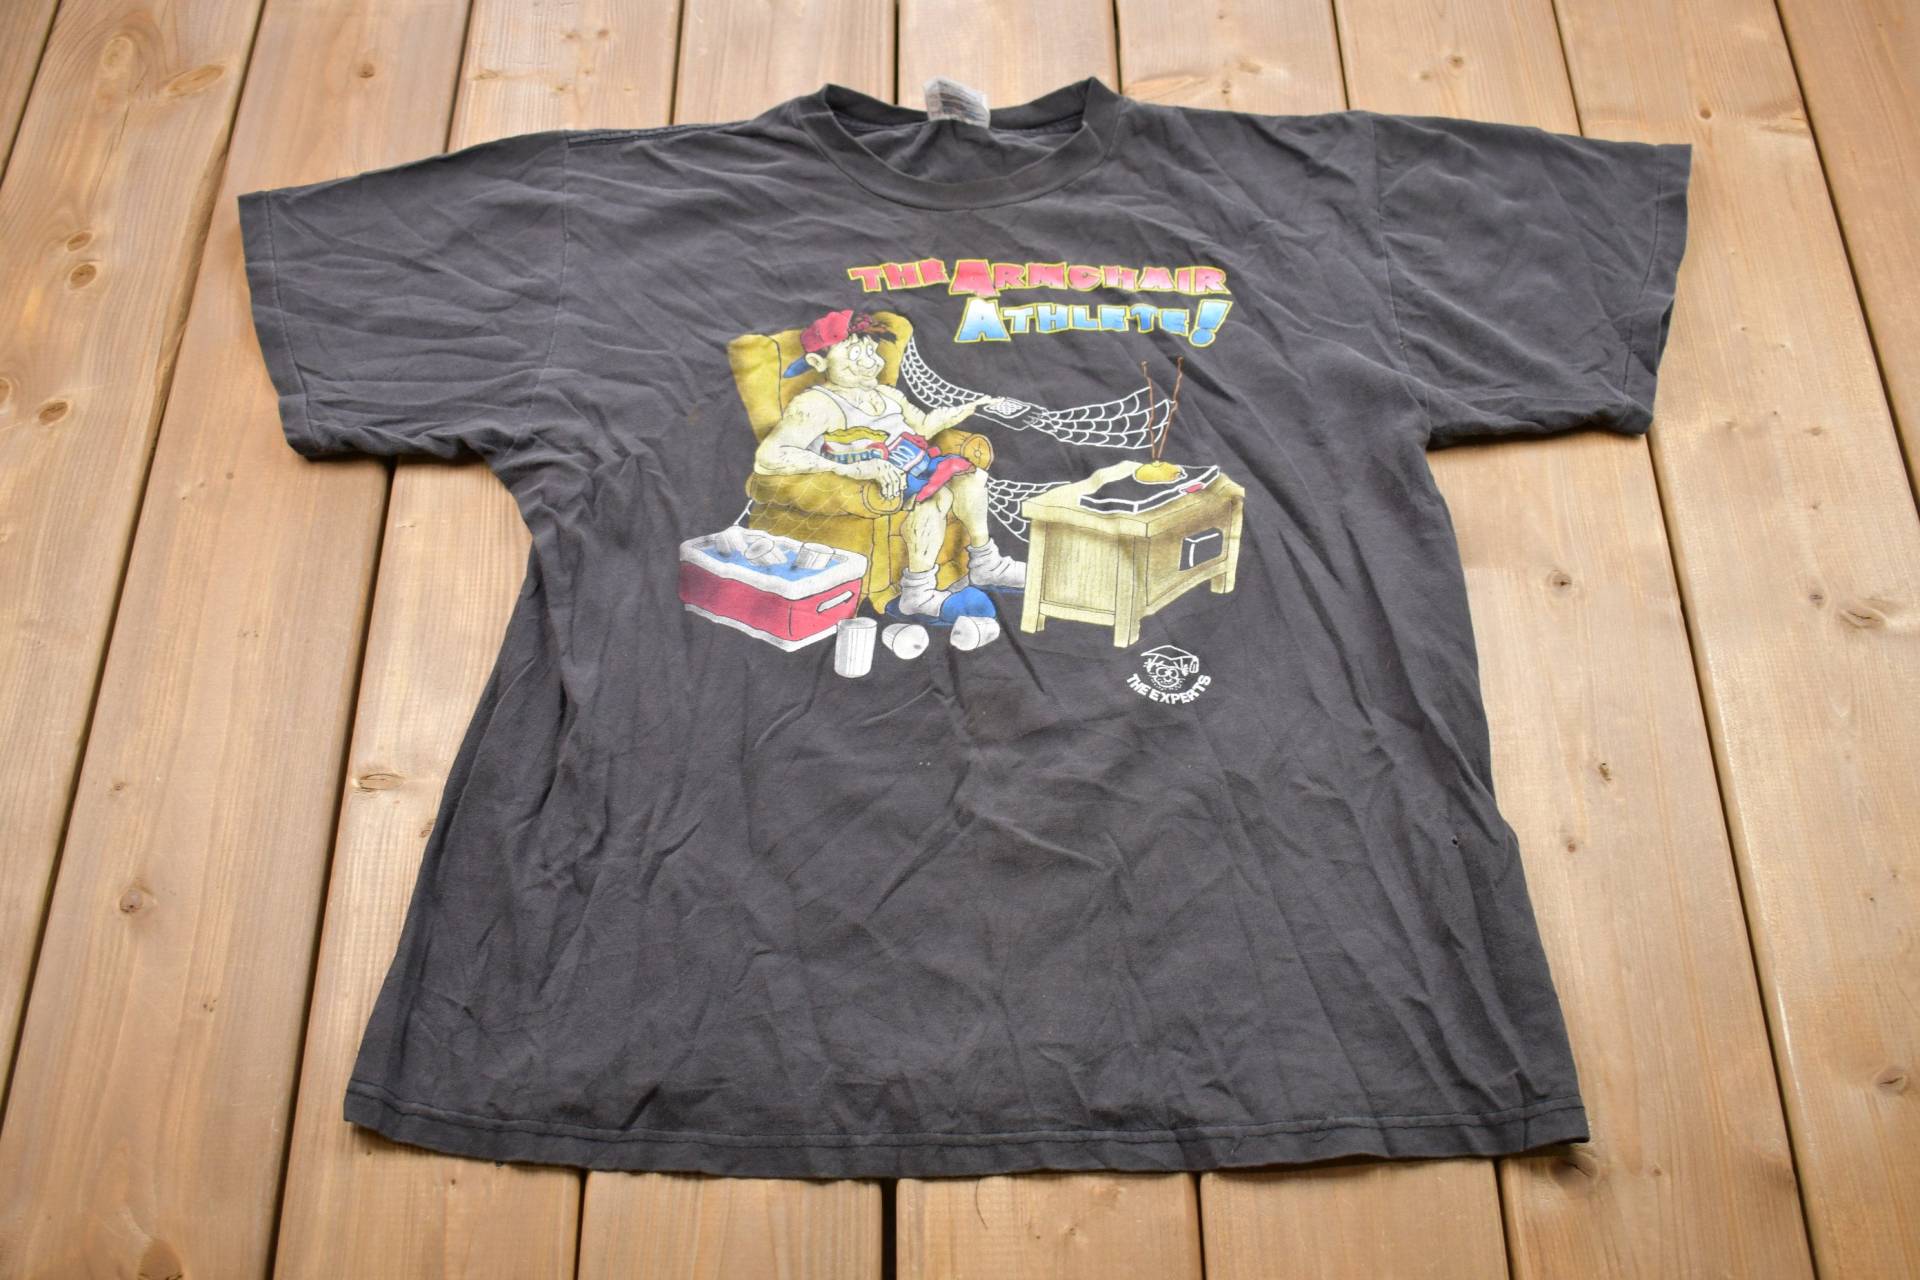 Vintage 1990Er Jahre The Armchair Athlete Grafik T-Shirt/90Er Tnt Streetwear Retro Style Single Stitch Made in Usa von Lostboysvintage